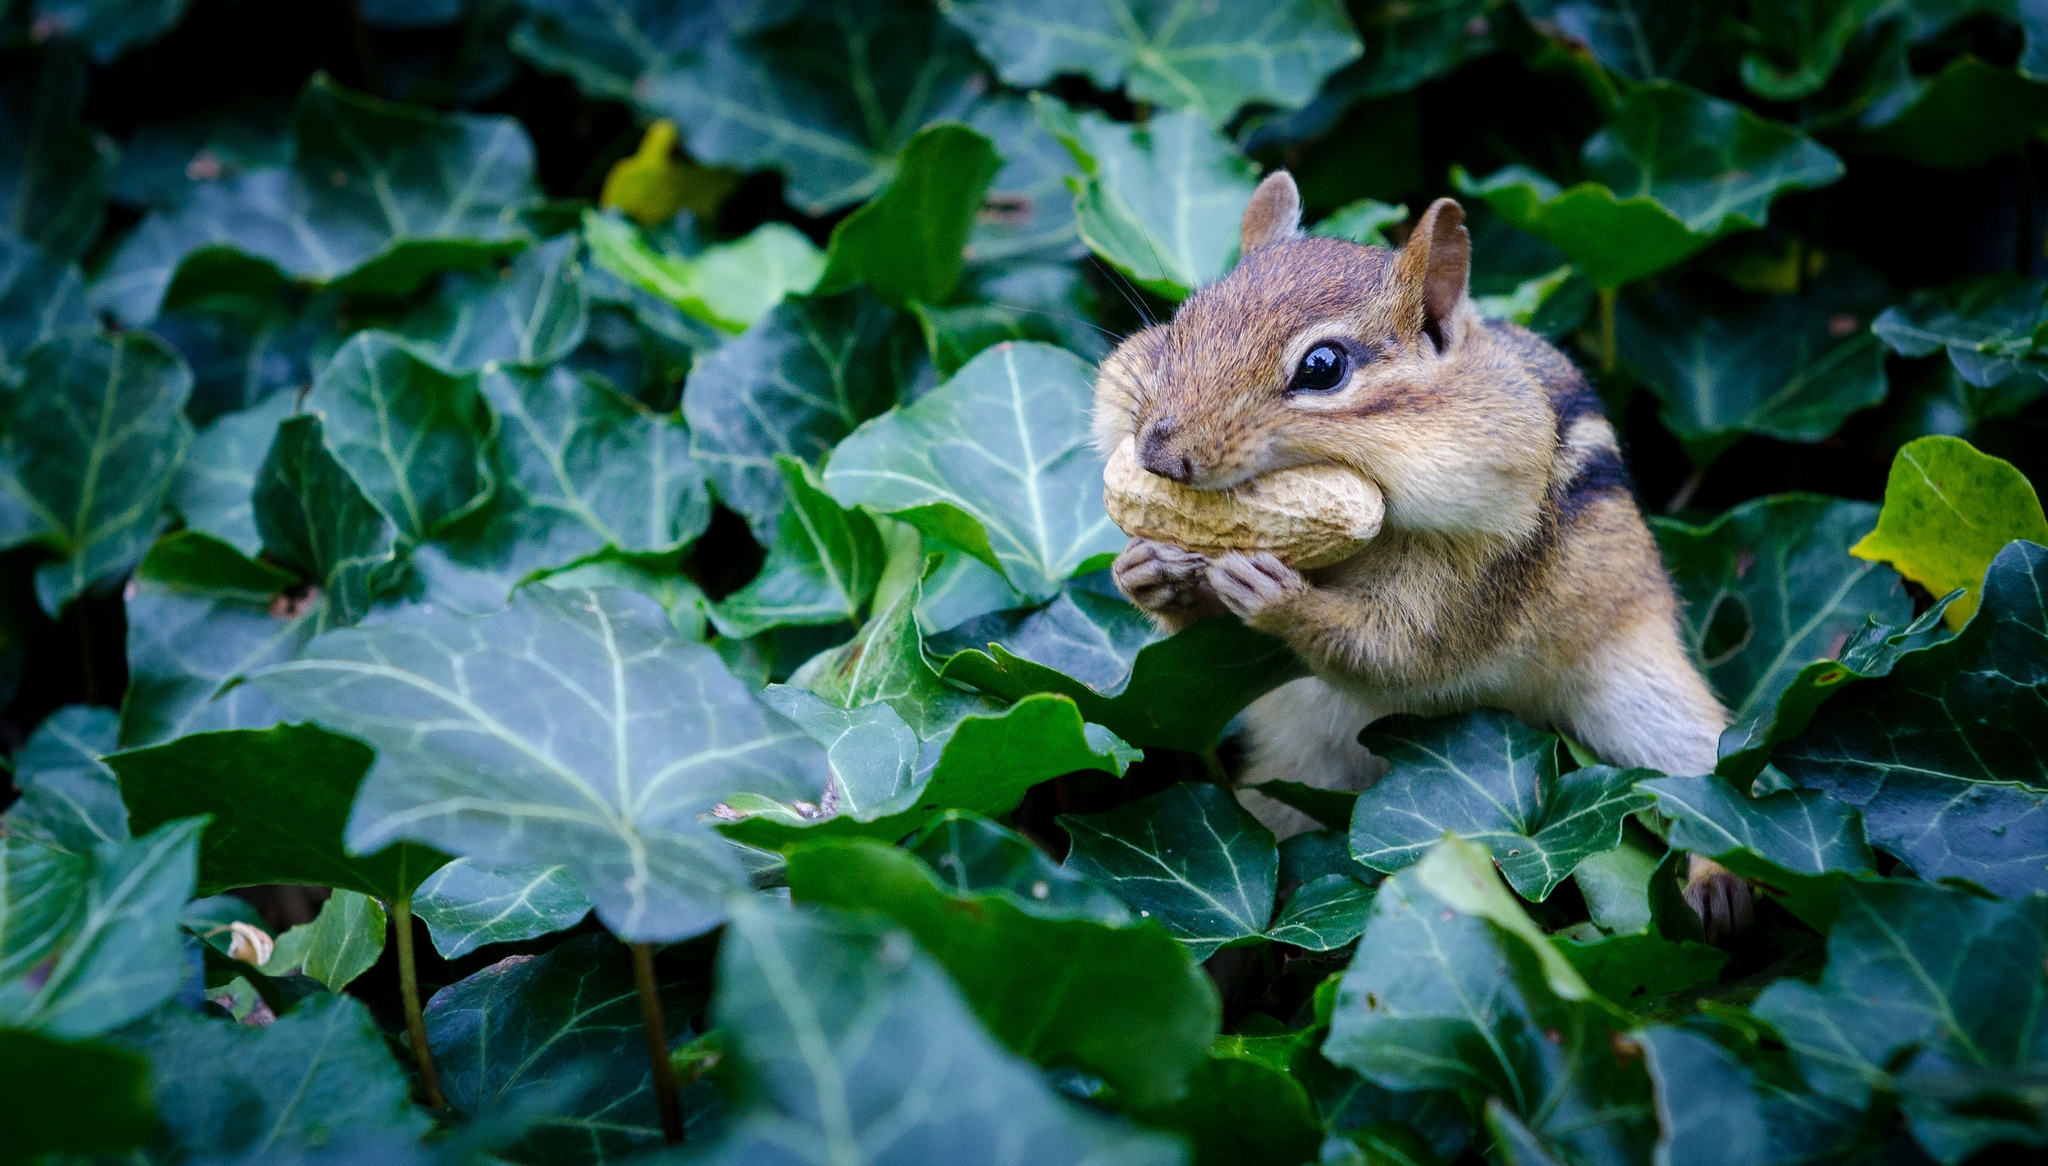 A chipmunk eats a nut